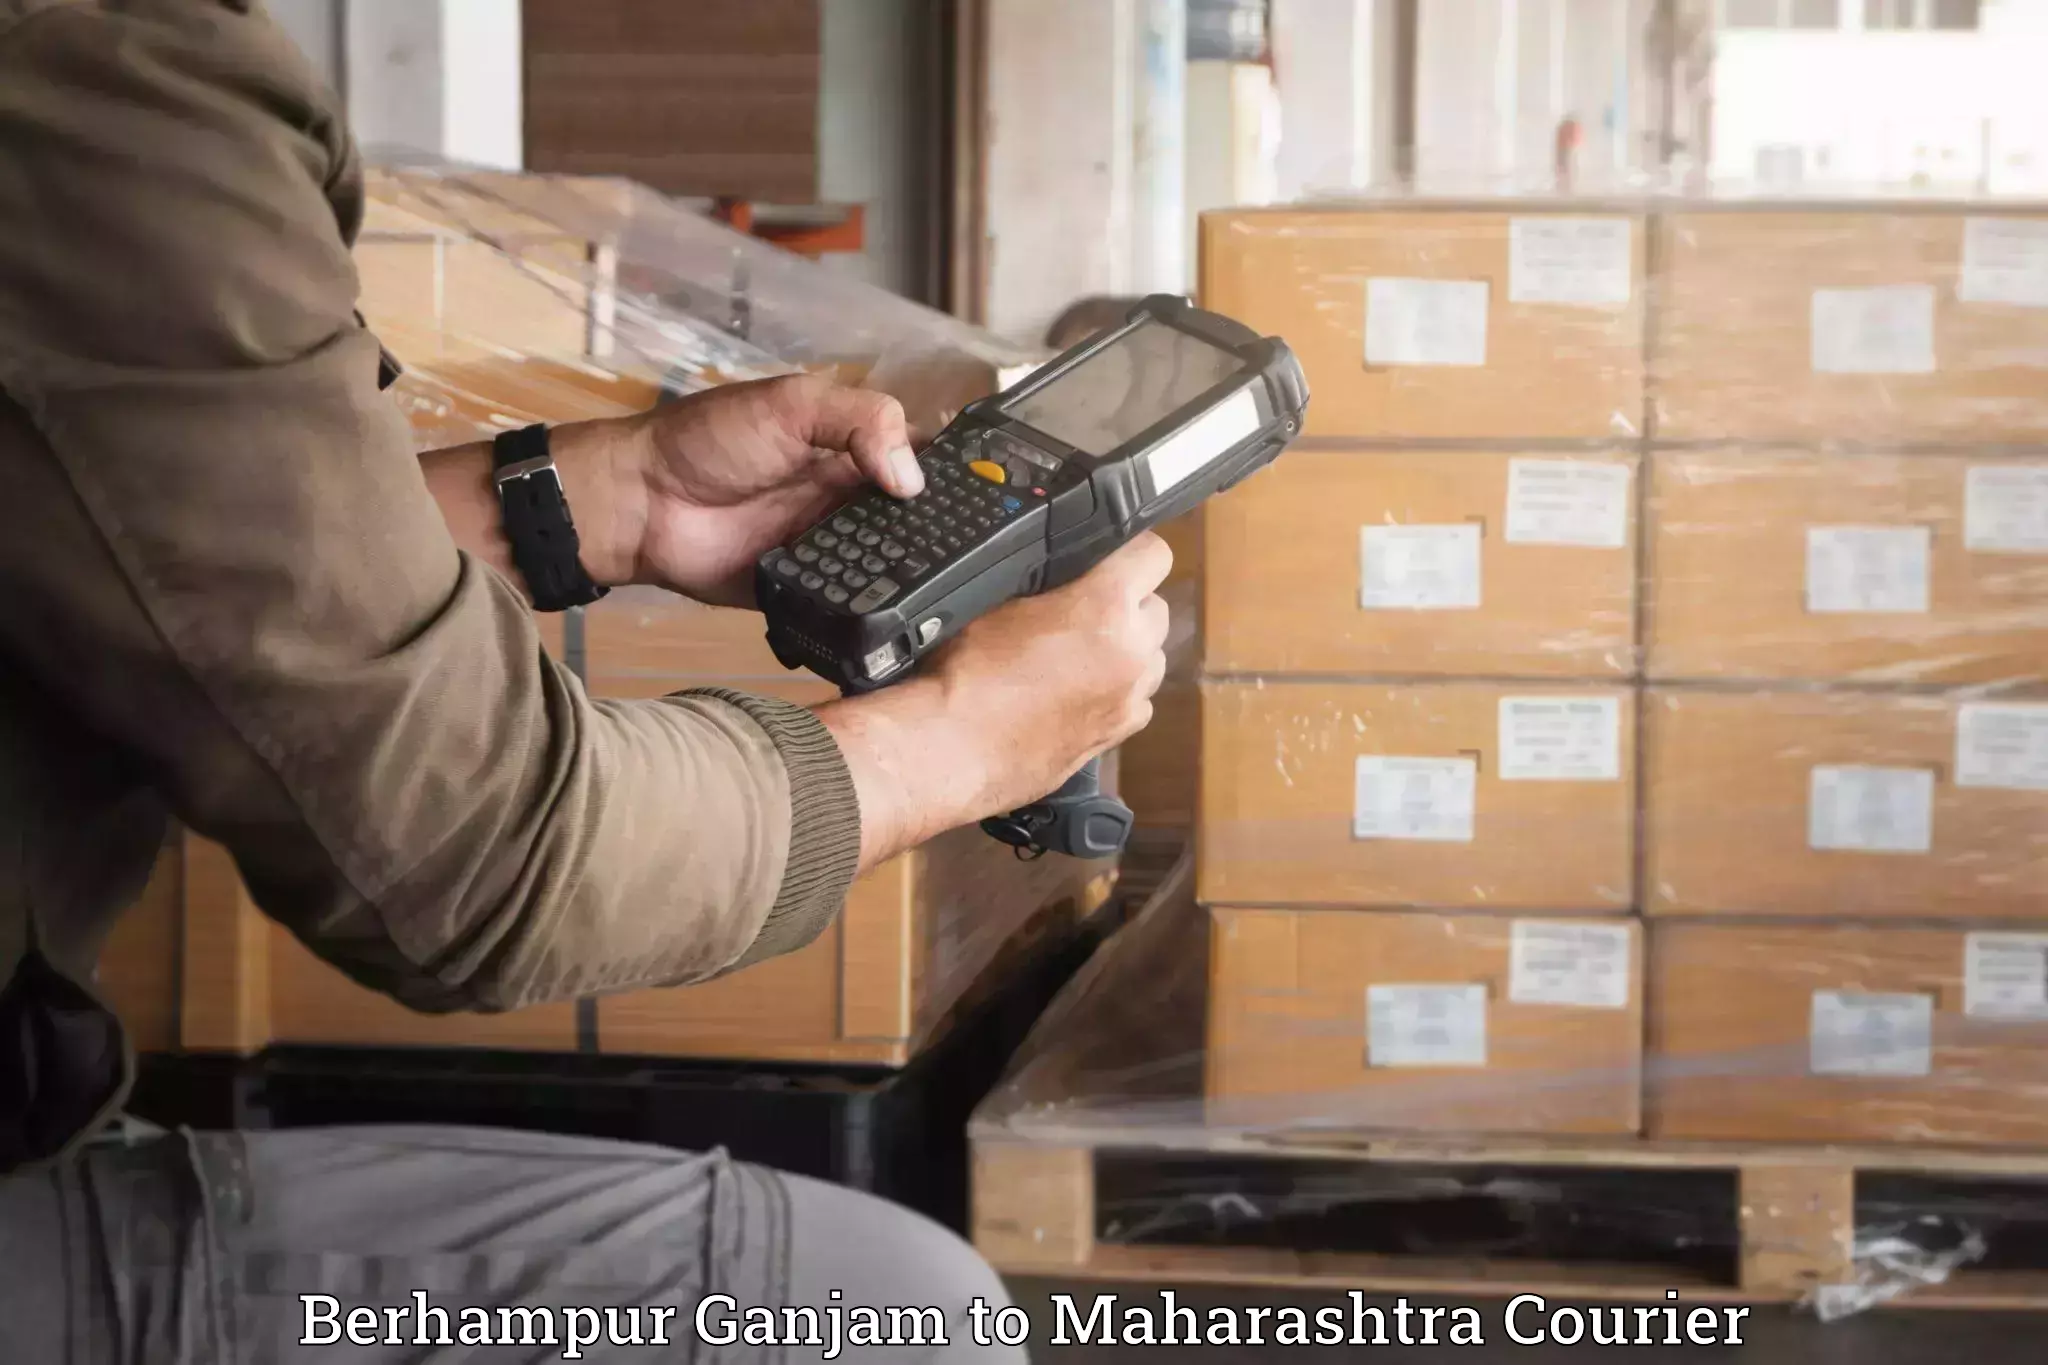 Trusted furniture movers Berhampur Ganjam to Bhiwandi